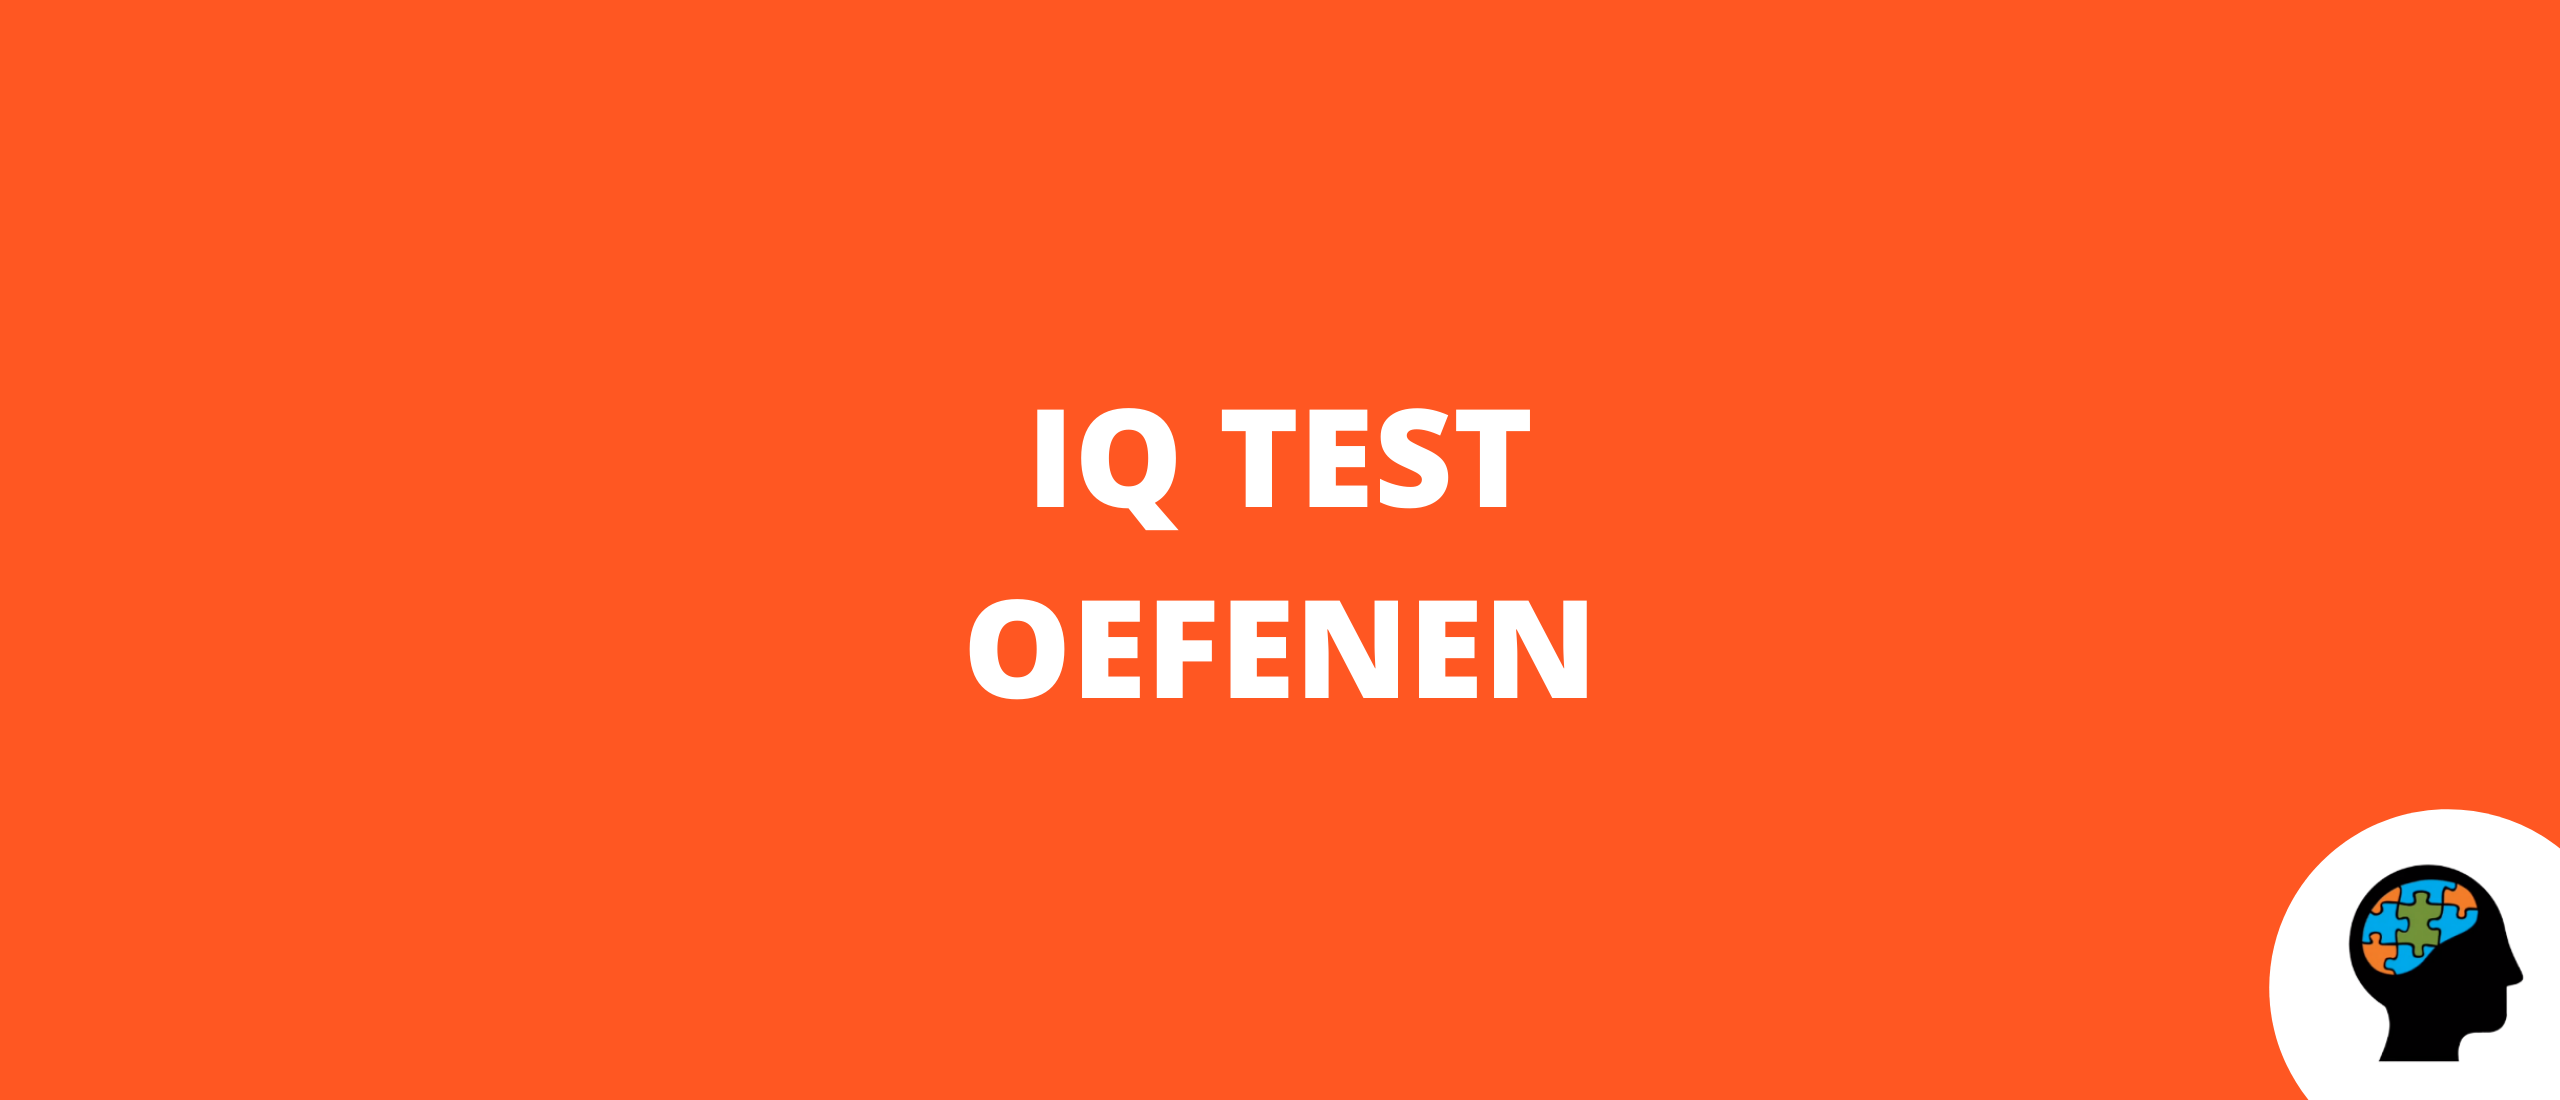 IQ test oefenen